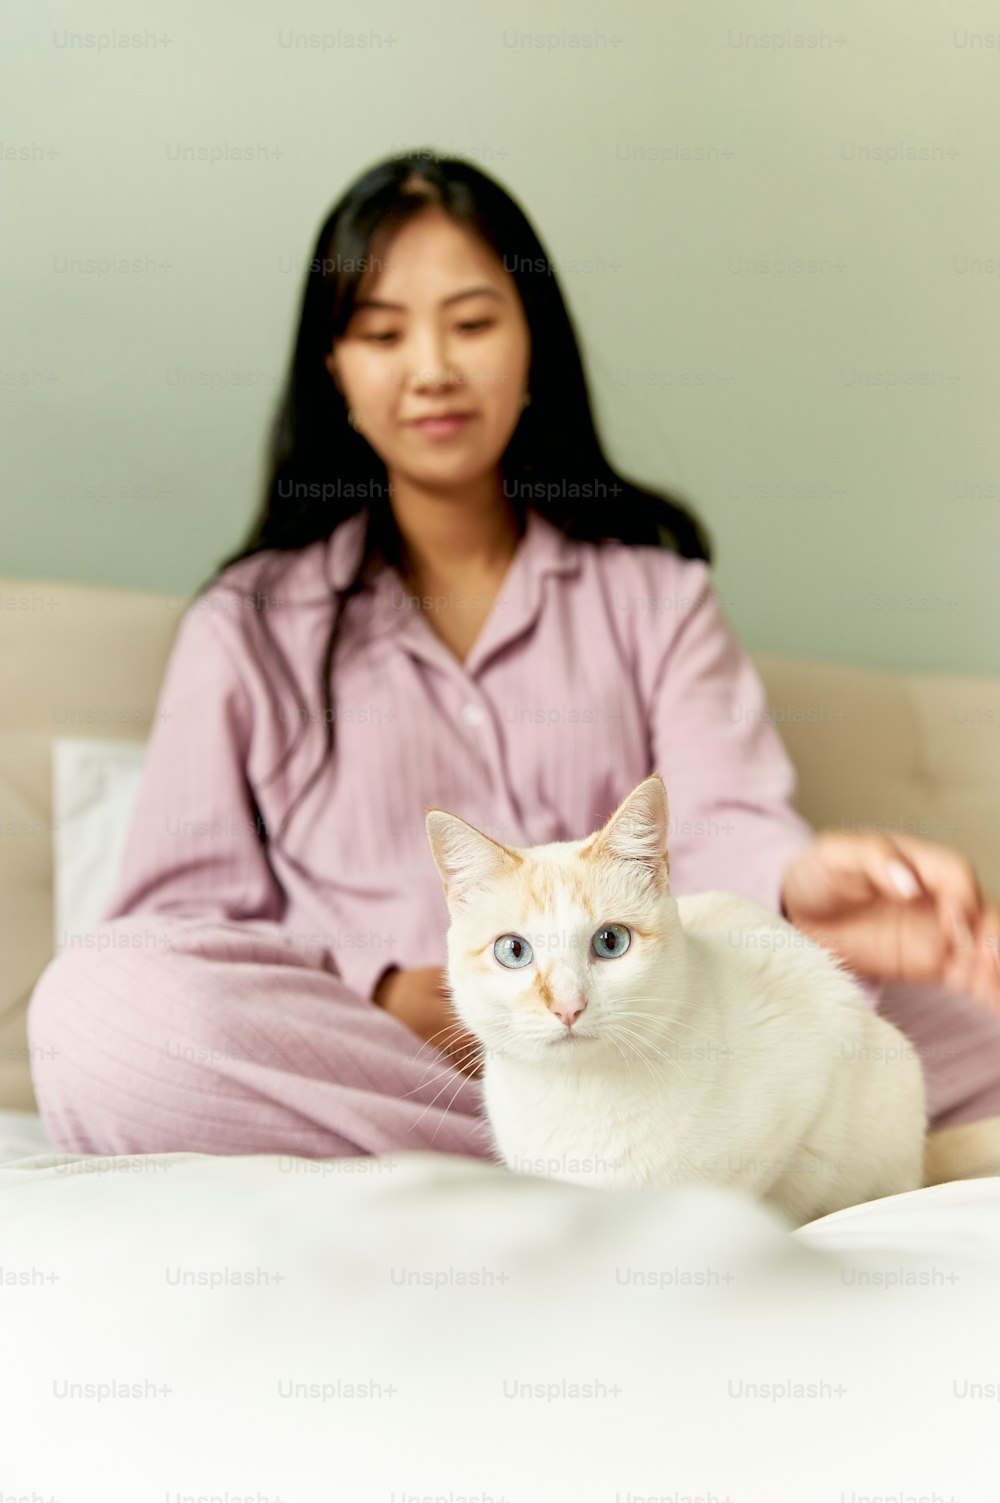 Una mujer sentada en una cama con un gato blanco